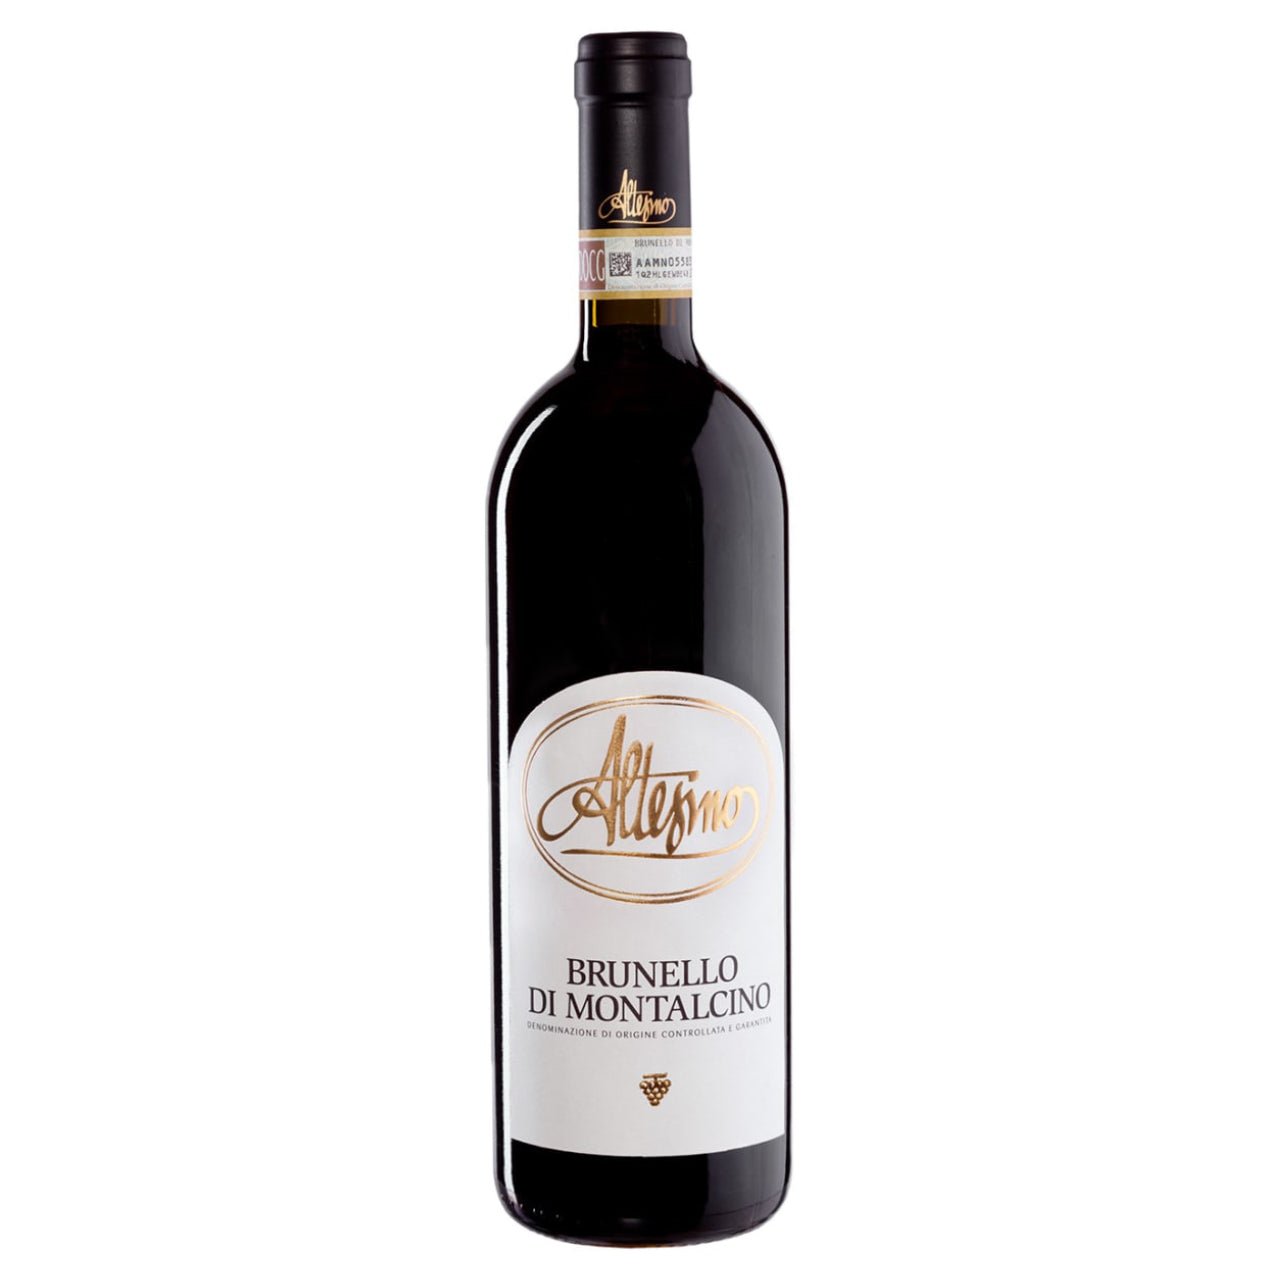 Altesino Brunello di Montalcino 2017 - Wine Italy Red - Liquor Wine Cave